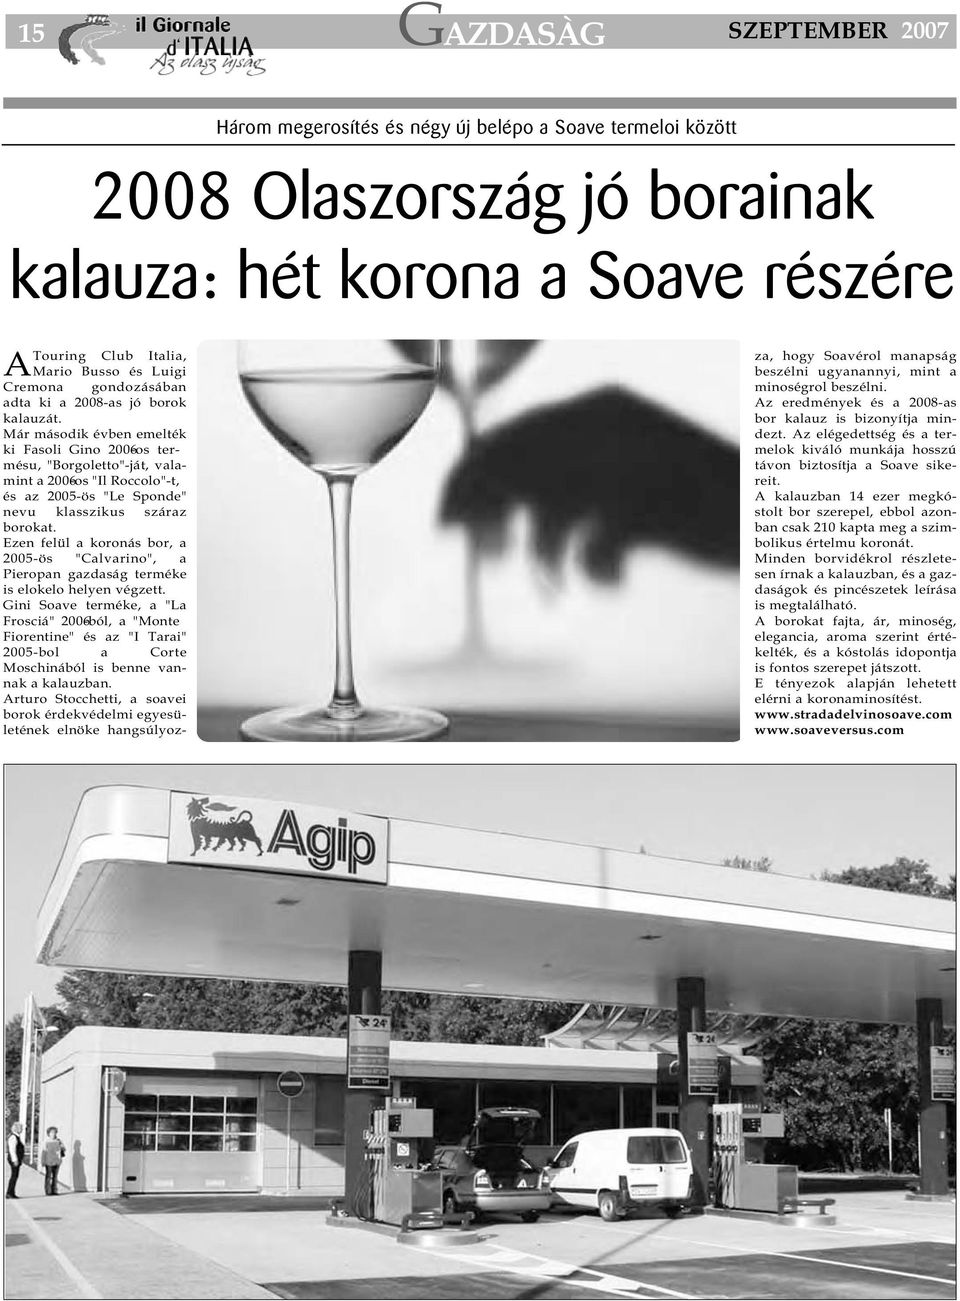 Már második évben emelték ki Fasoli Gino 2006-os termésu, "Borgoletto"-ját, valamint a 2006-os "Il Roccolo"-t, és az 2005-ös "Le Sponde" nevu klasszikus száraz borokat.